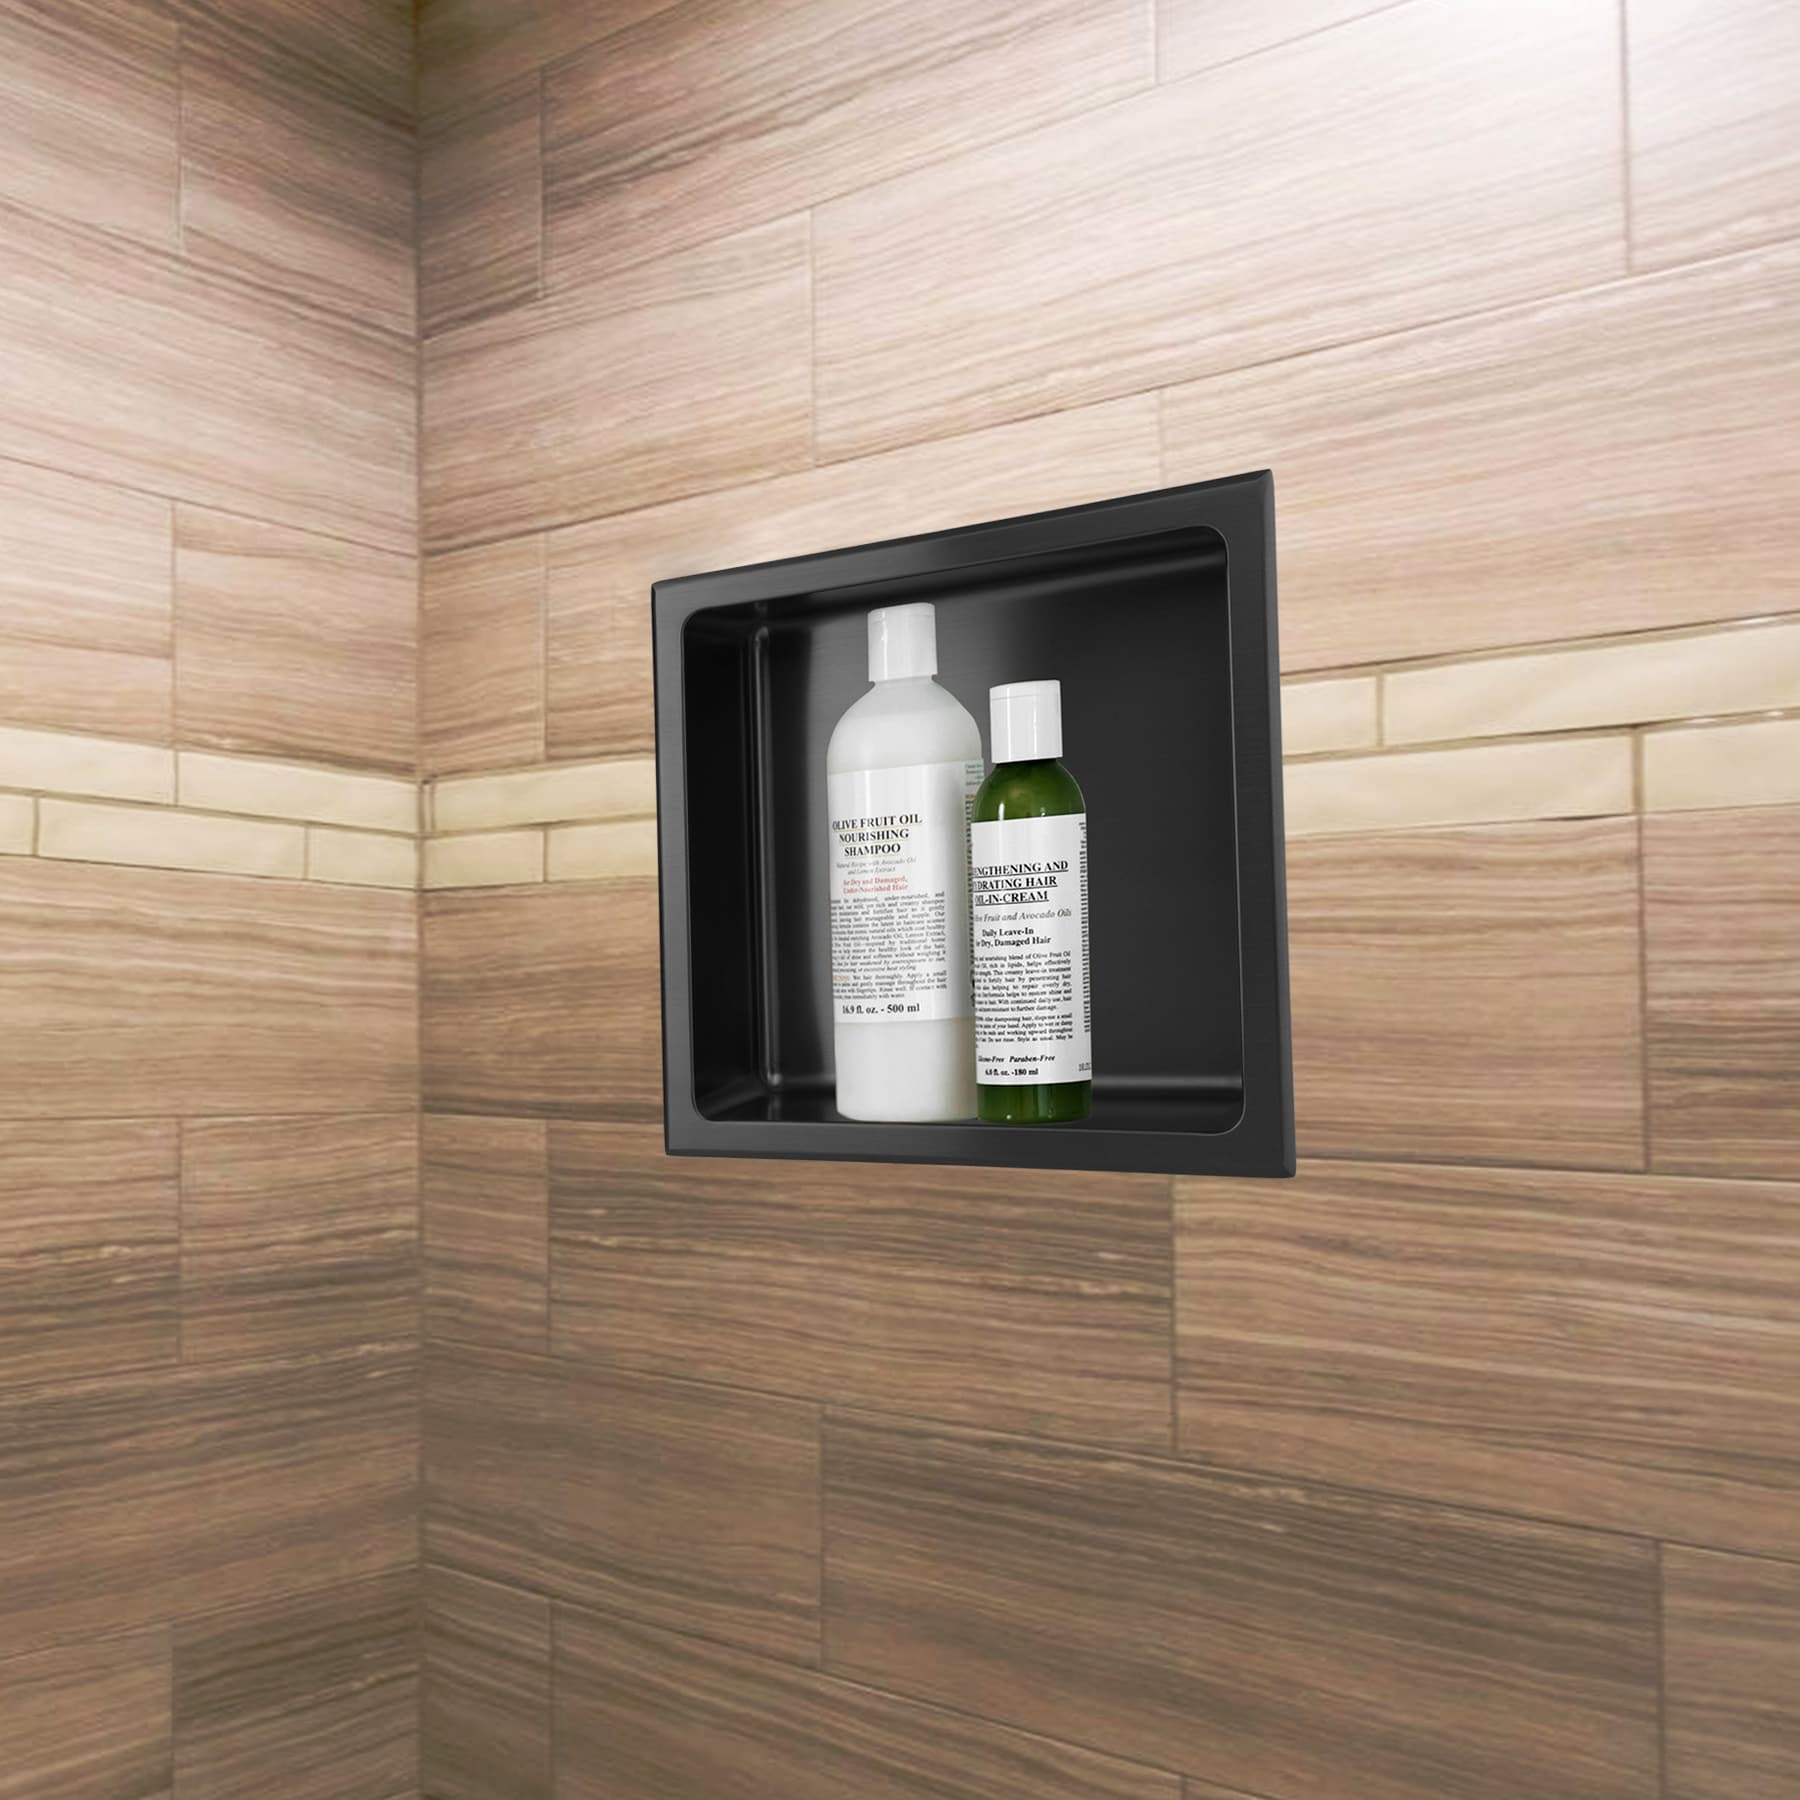 AKDY 12 in. W x 24 in. H x 4 in. D 18-Gauge Stainless Steel Double Shelf Bathroom Shower Wall NICHE in Matte Black